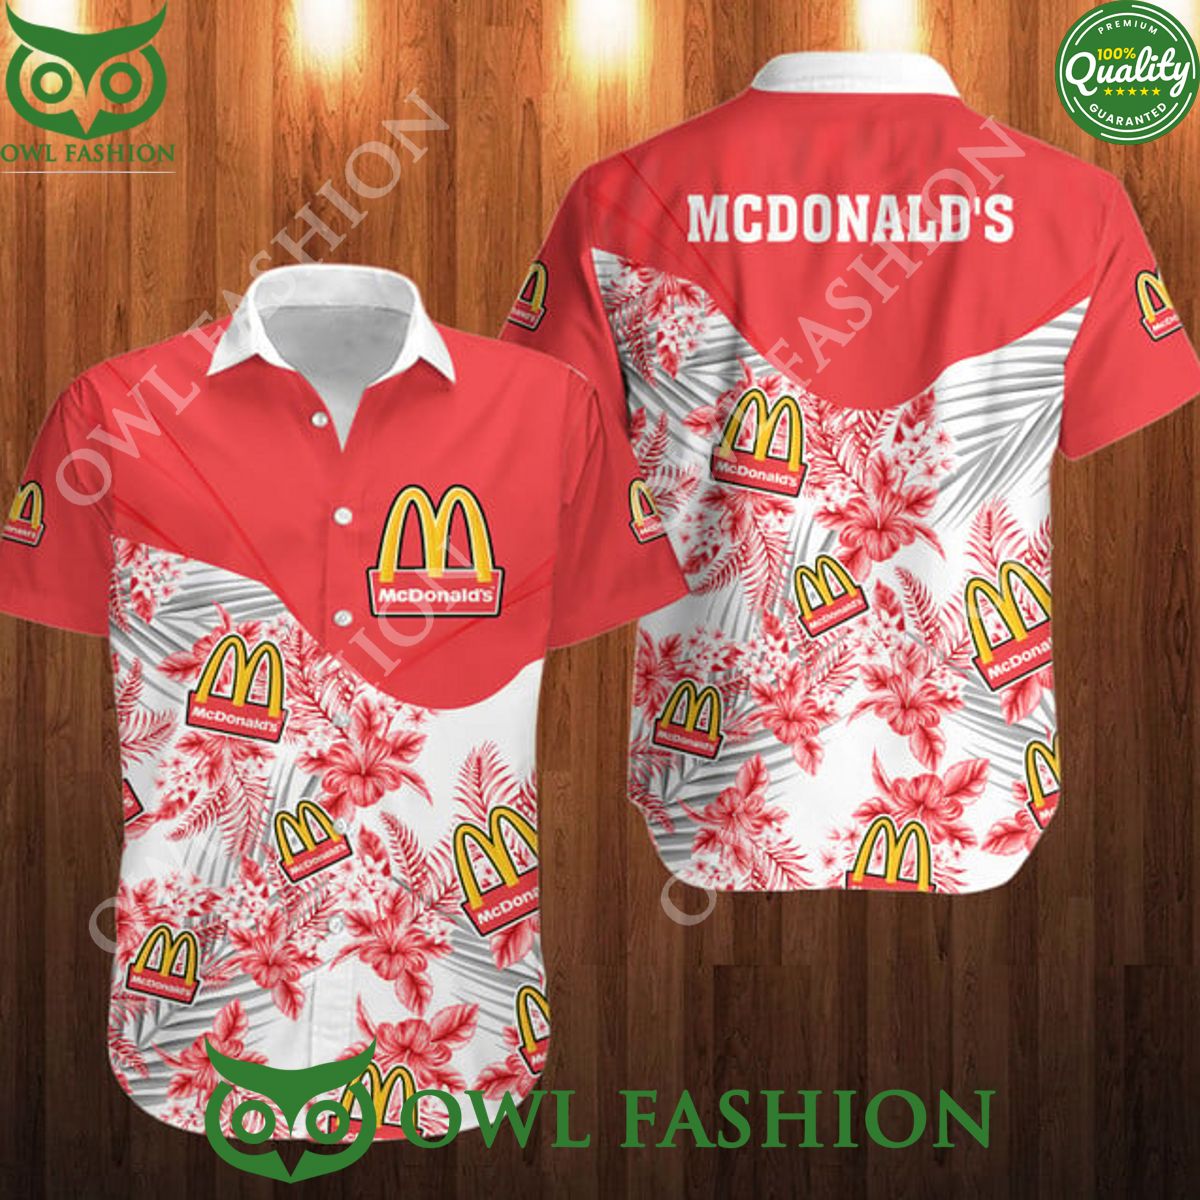 McDonald's fast food chain floral summer hawaiian shirt